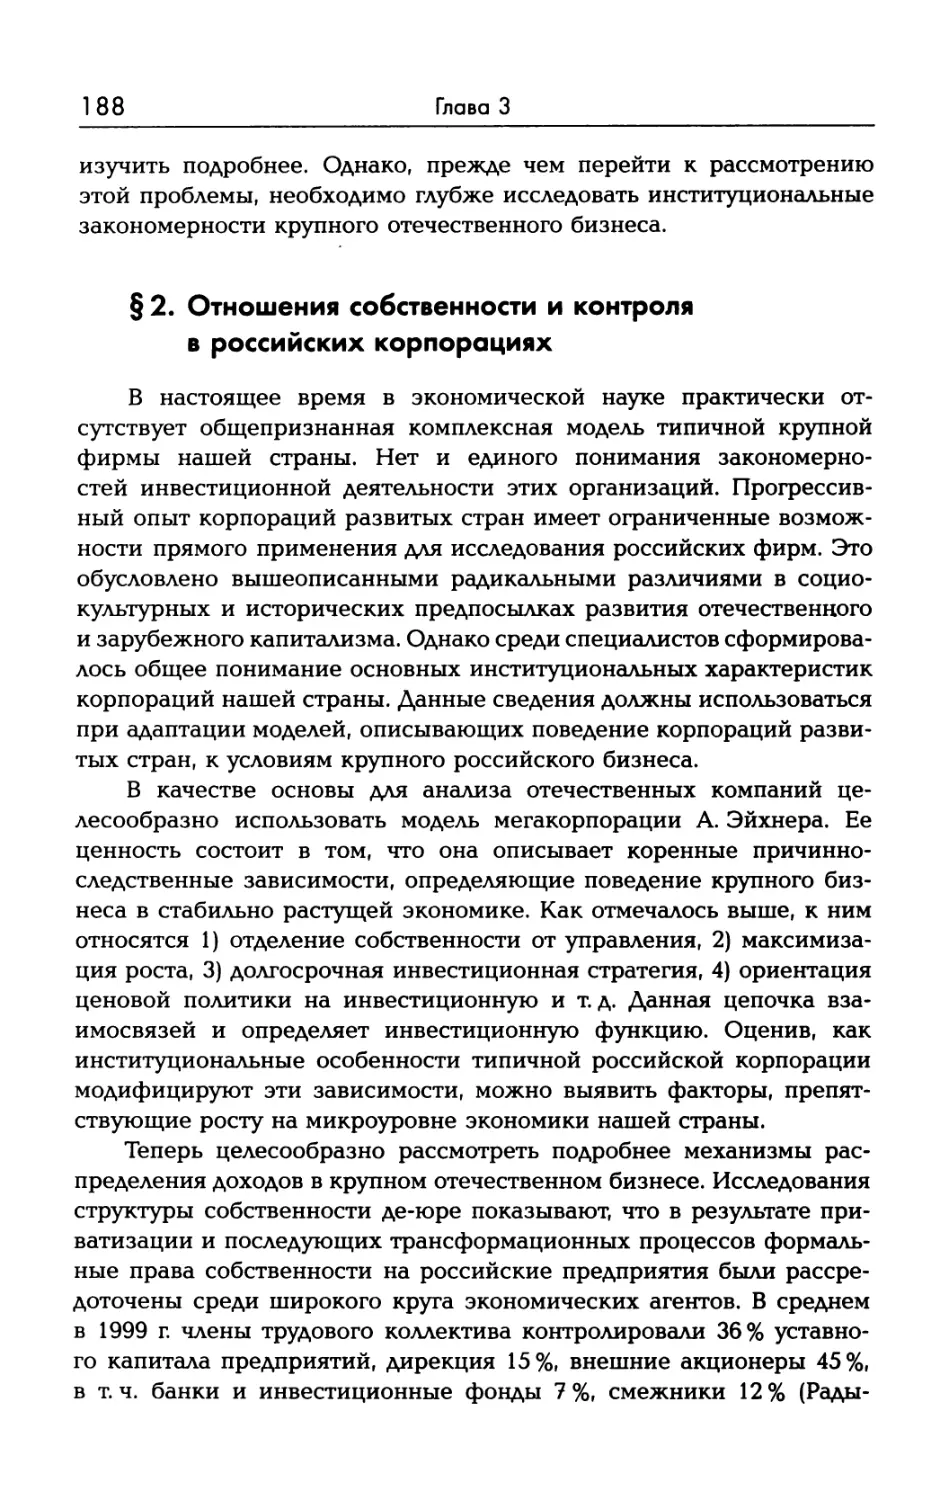 § 2. Отношения собственности и контроля в российских корпорациях